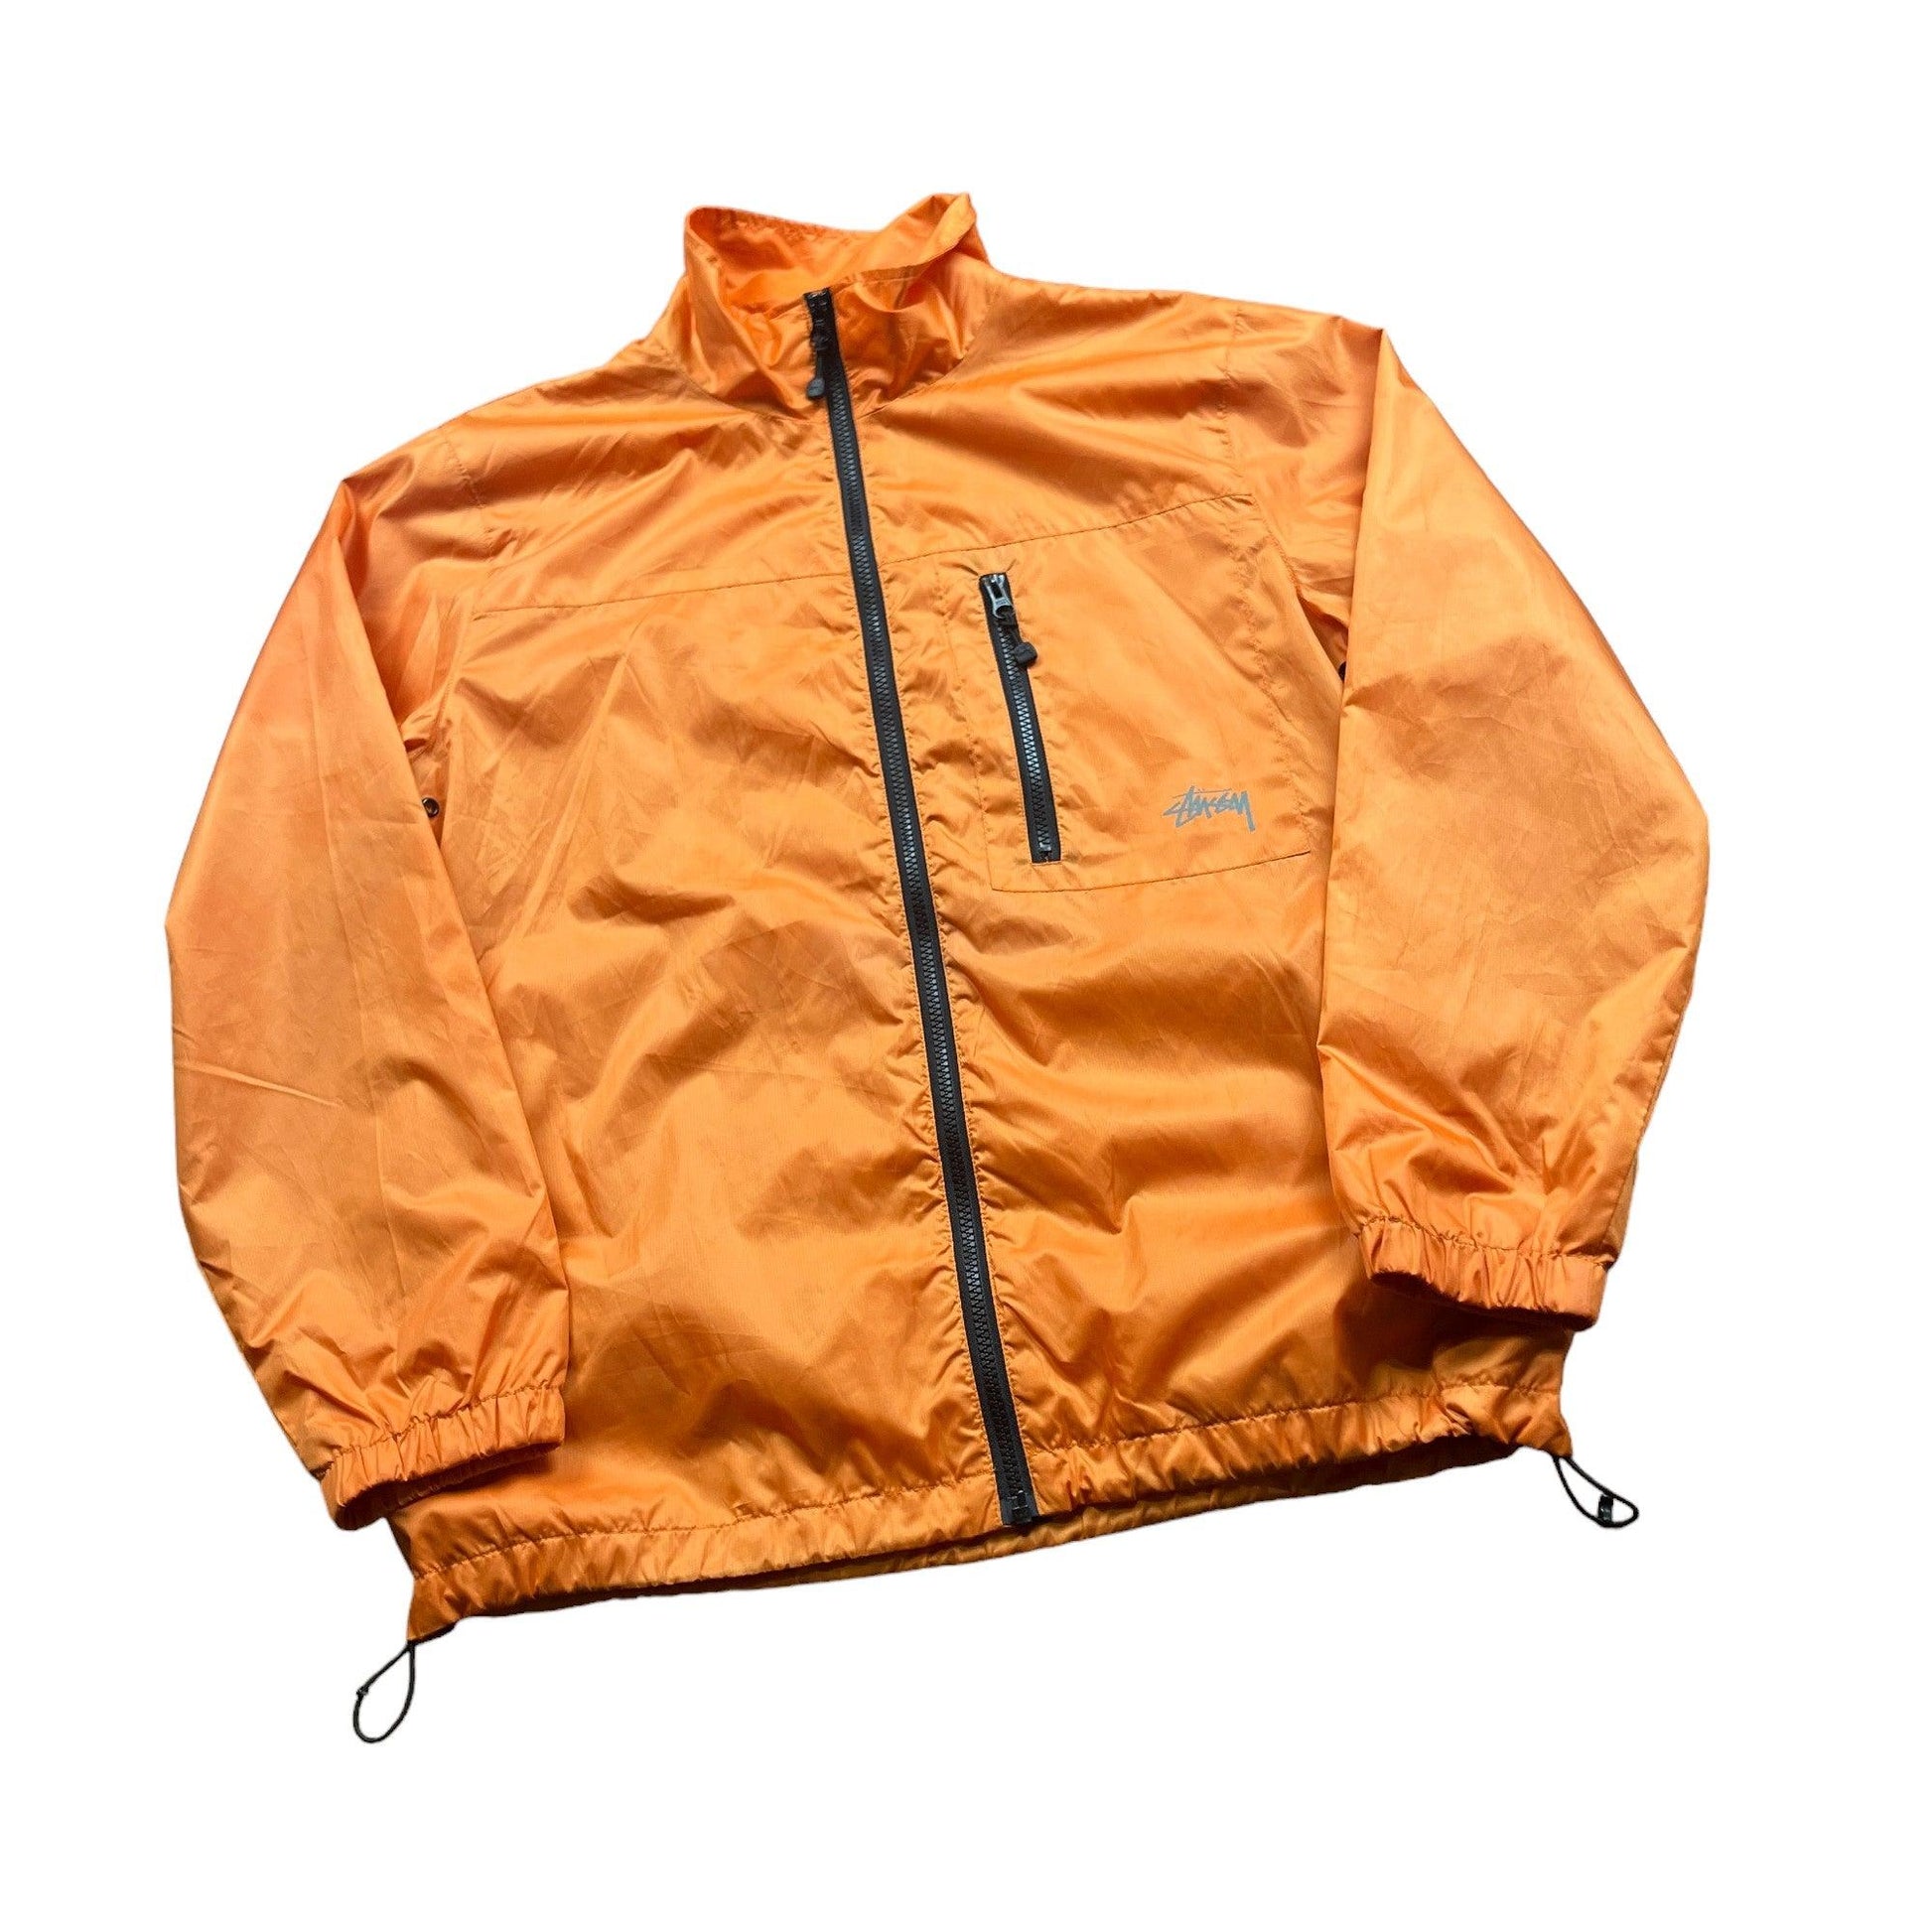 Orange Stussy Jacket - Medium - The Streetwear Studio